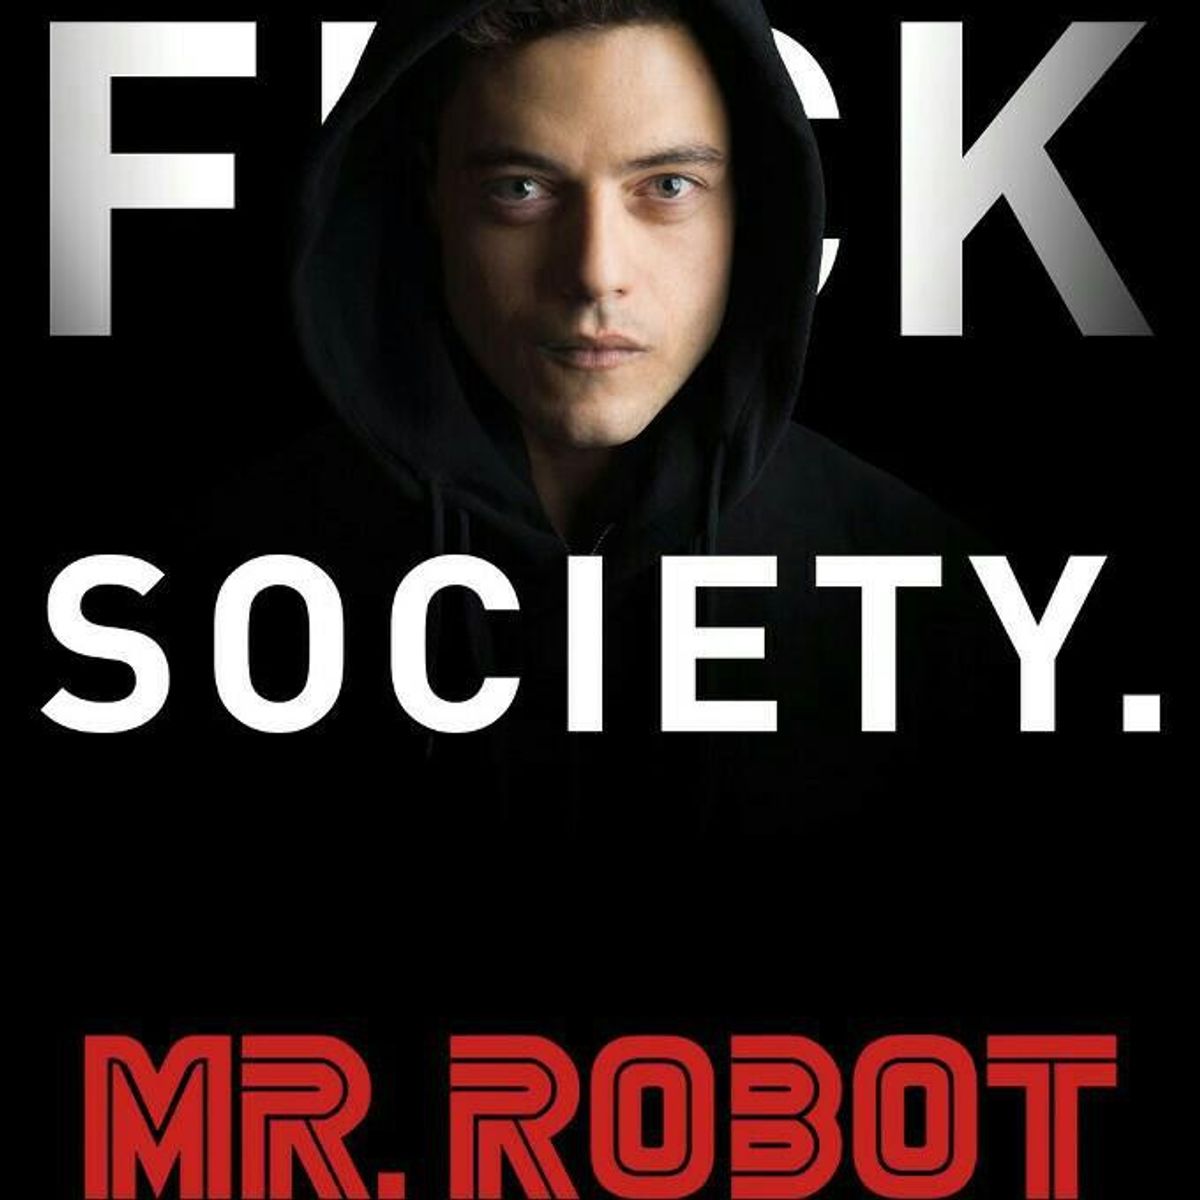 Mr. Robot Season 2, Episode 10 Recap